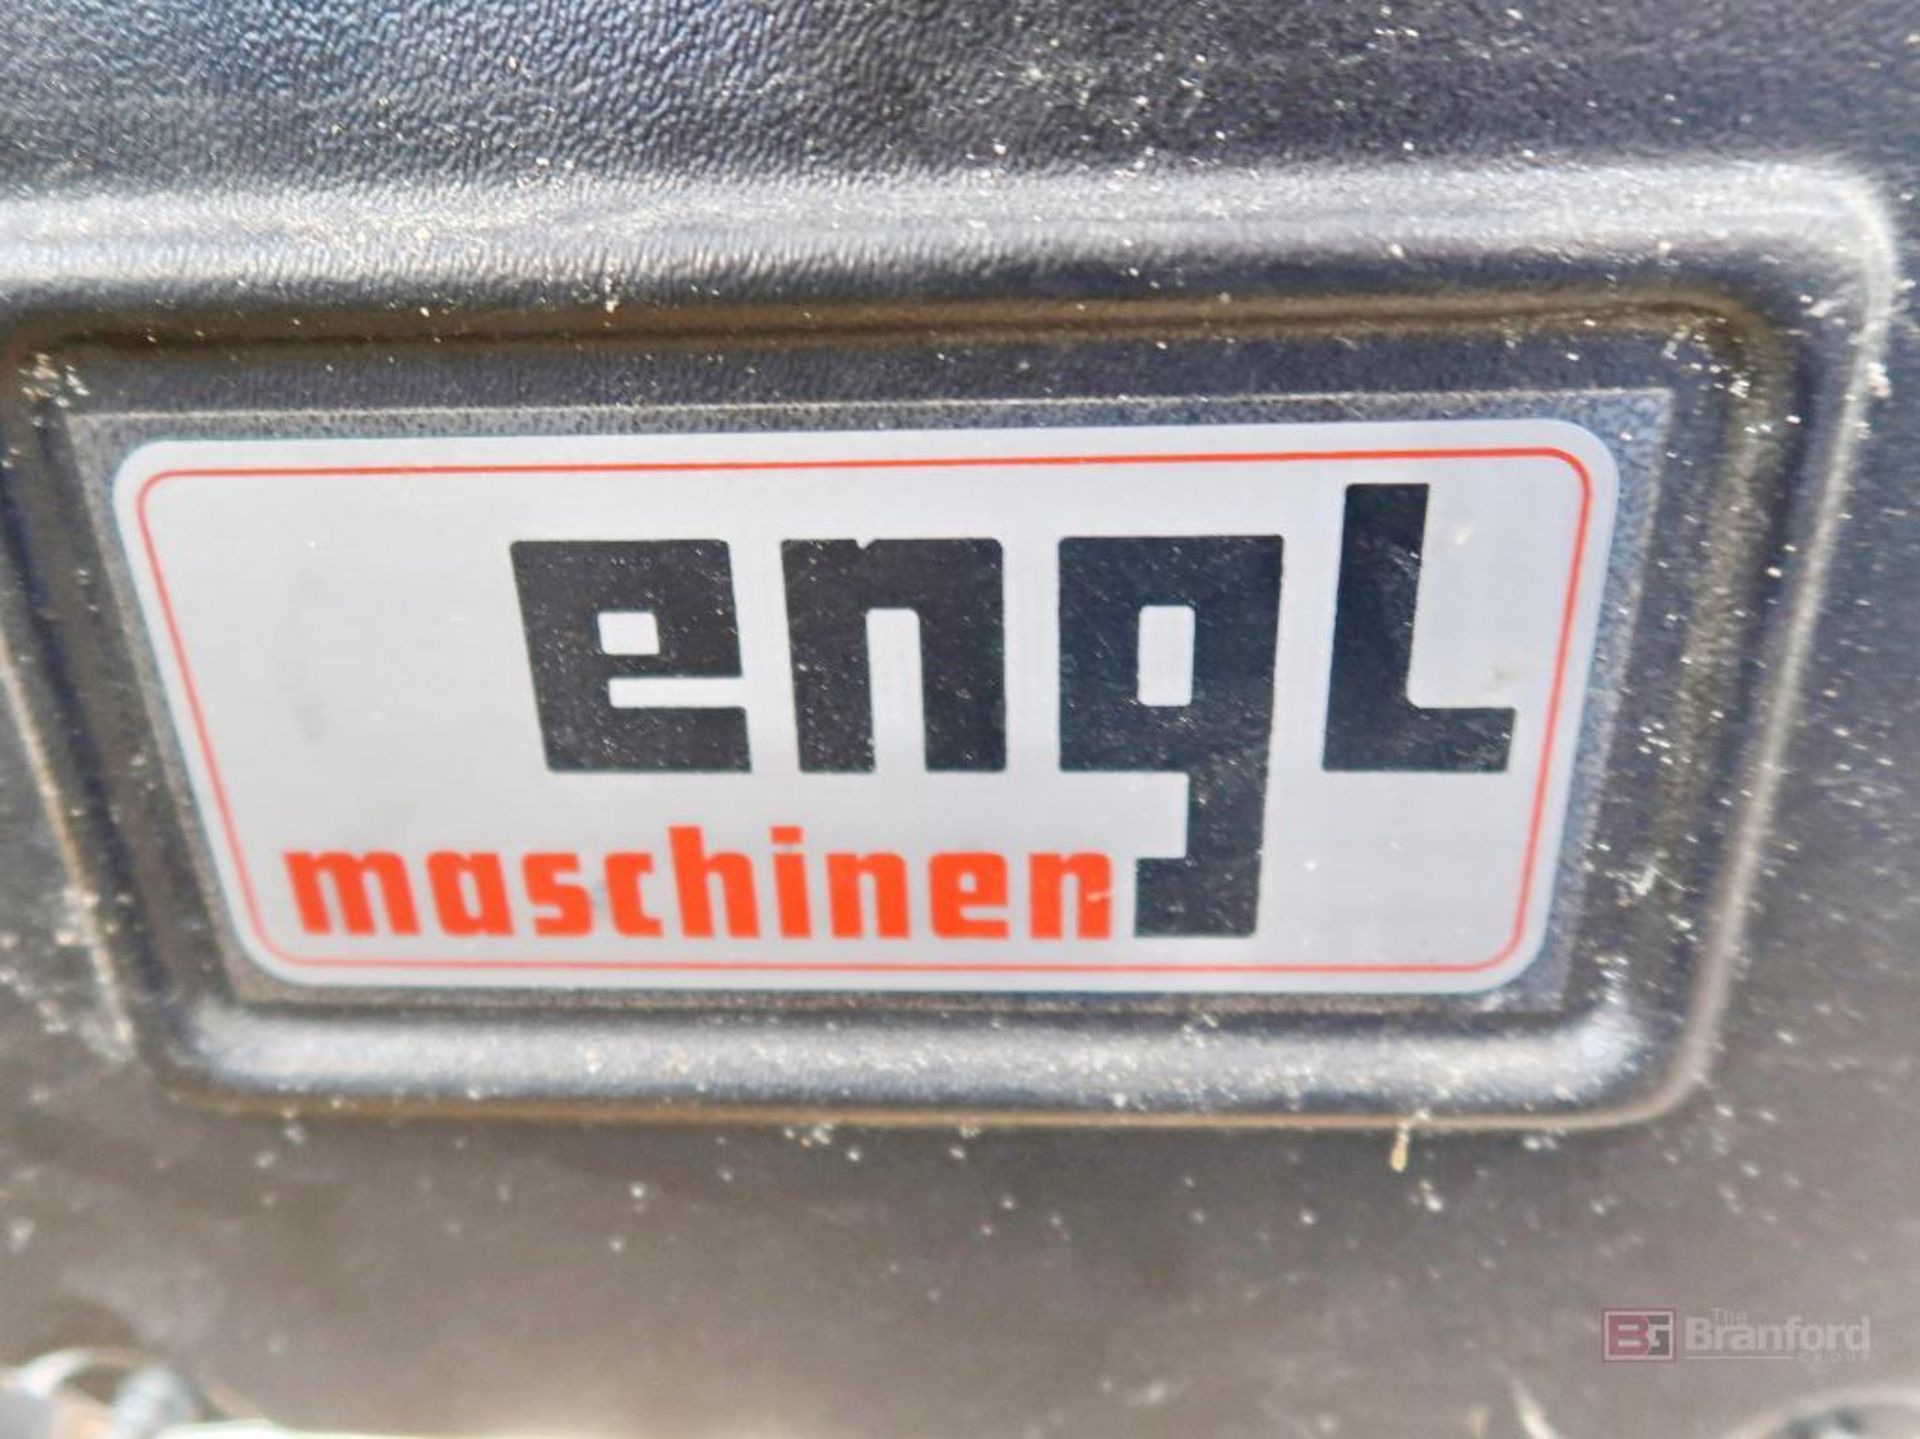 ENGL Maschinen Grain Transfer System - Image 4 of 8